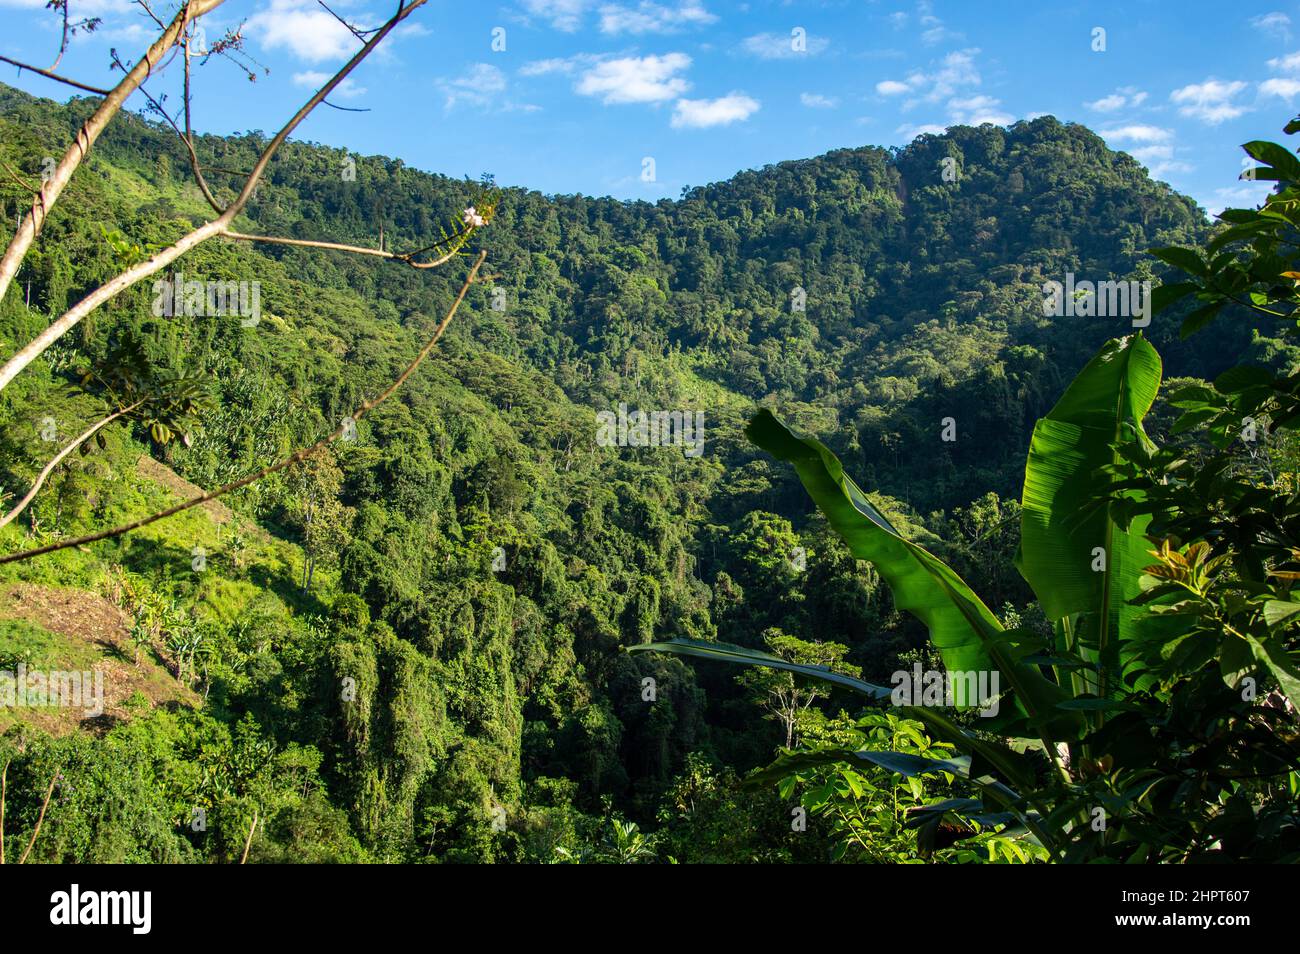 Una vista del paesaggio della giungla della Sierra Nevada de Santa Marta catena montuosa vicino alla Città perduta / Ciudad Perdida in Colombia Foto Stock